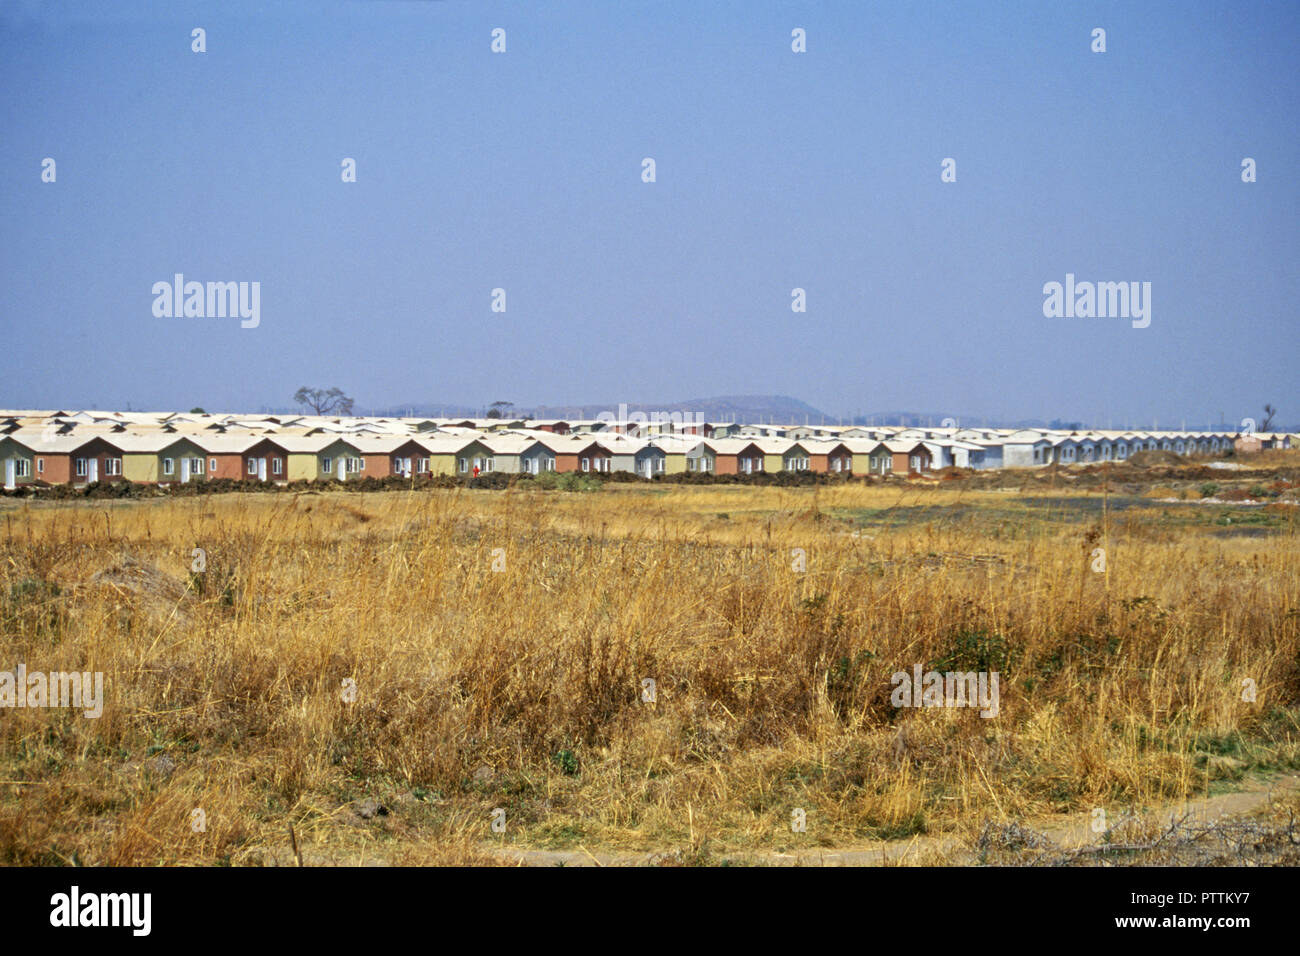 A basso costo e ad alta densità abitativa, Harare, Zimbabwe Foto Stock